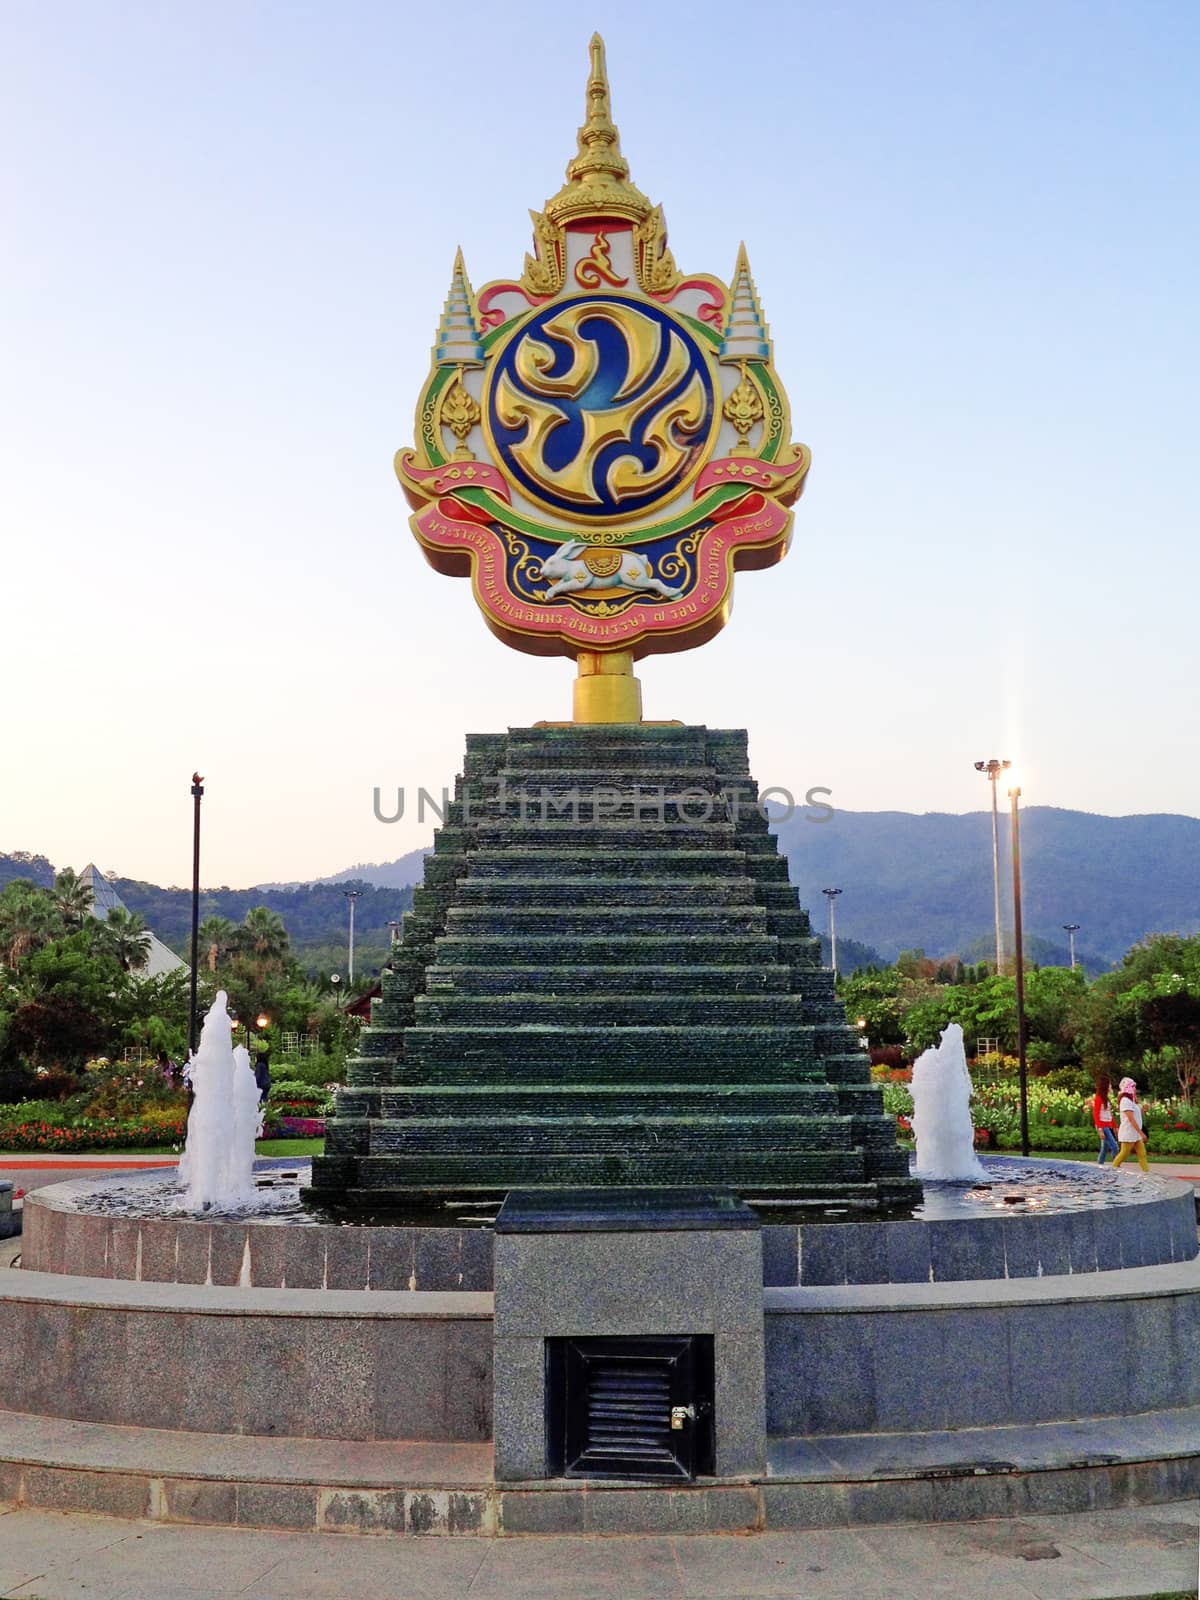 CHIANG MAI, THAILAND - January 01, 2014: The Royal Park Rajapruek near Chiang Mai, Thailand.